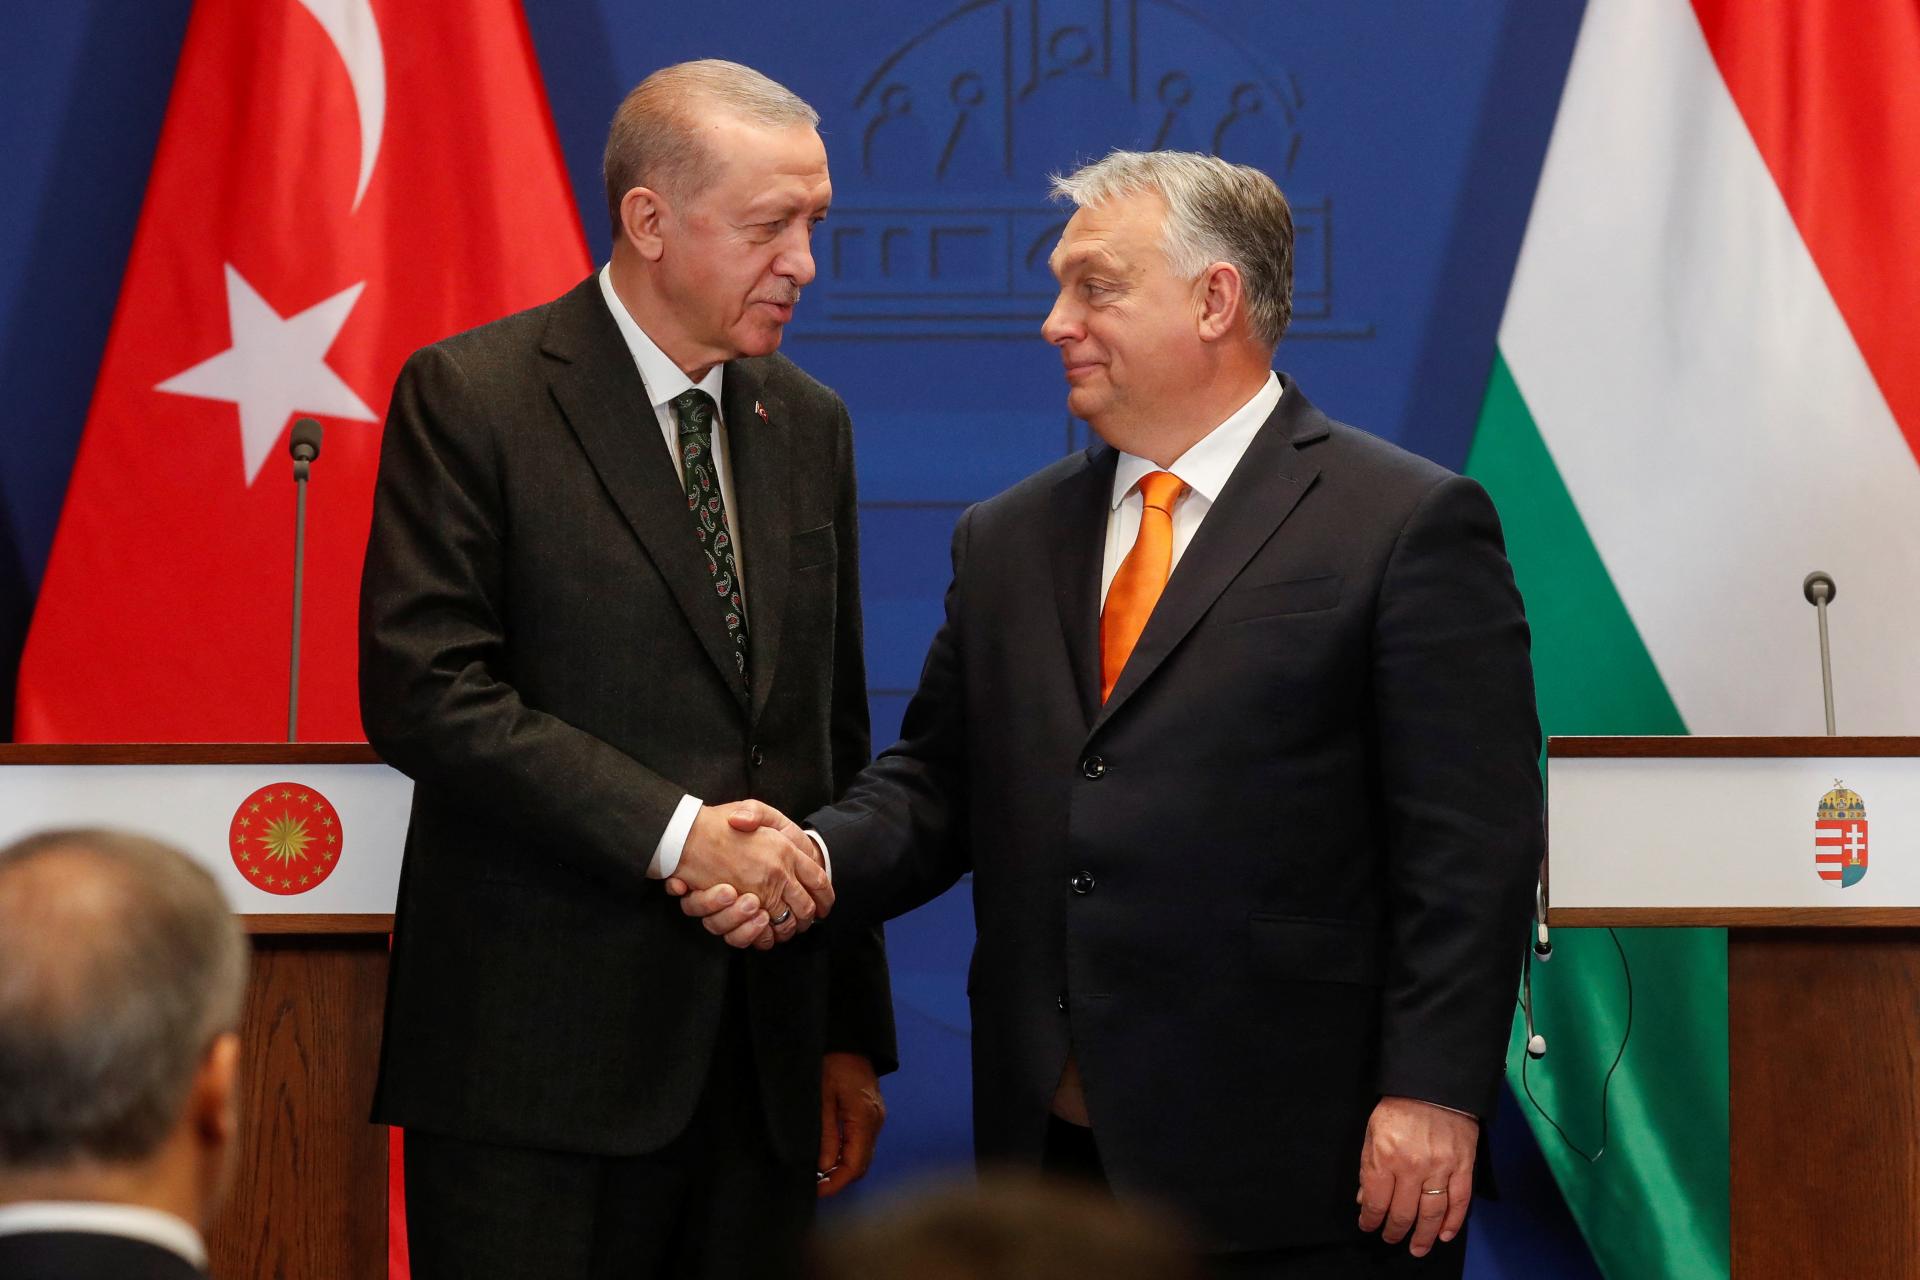 Maďarsko chce byť medzi najväčšími víťazmi storočia, podobne ako Turecko, tvrdí Orbán